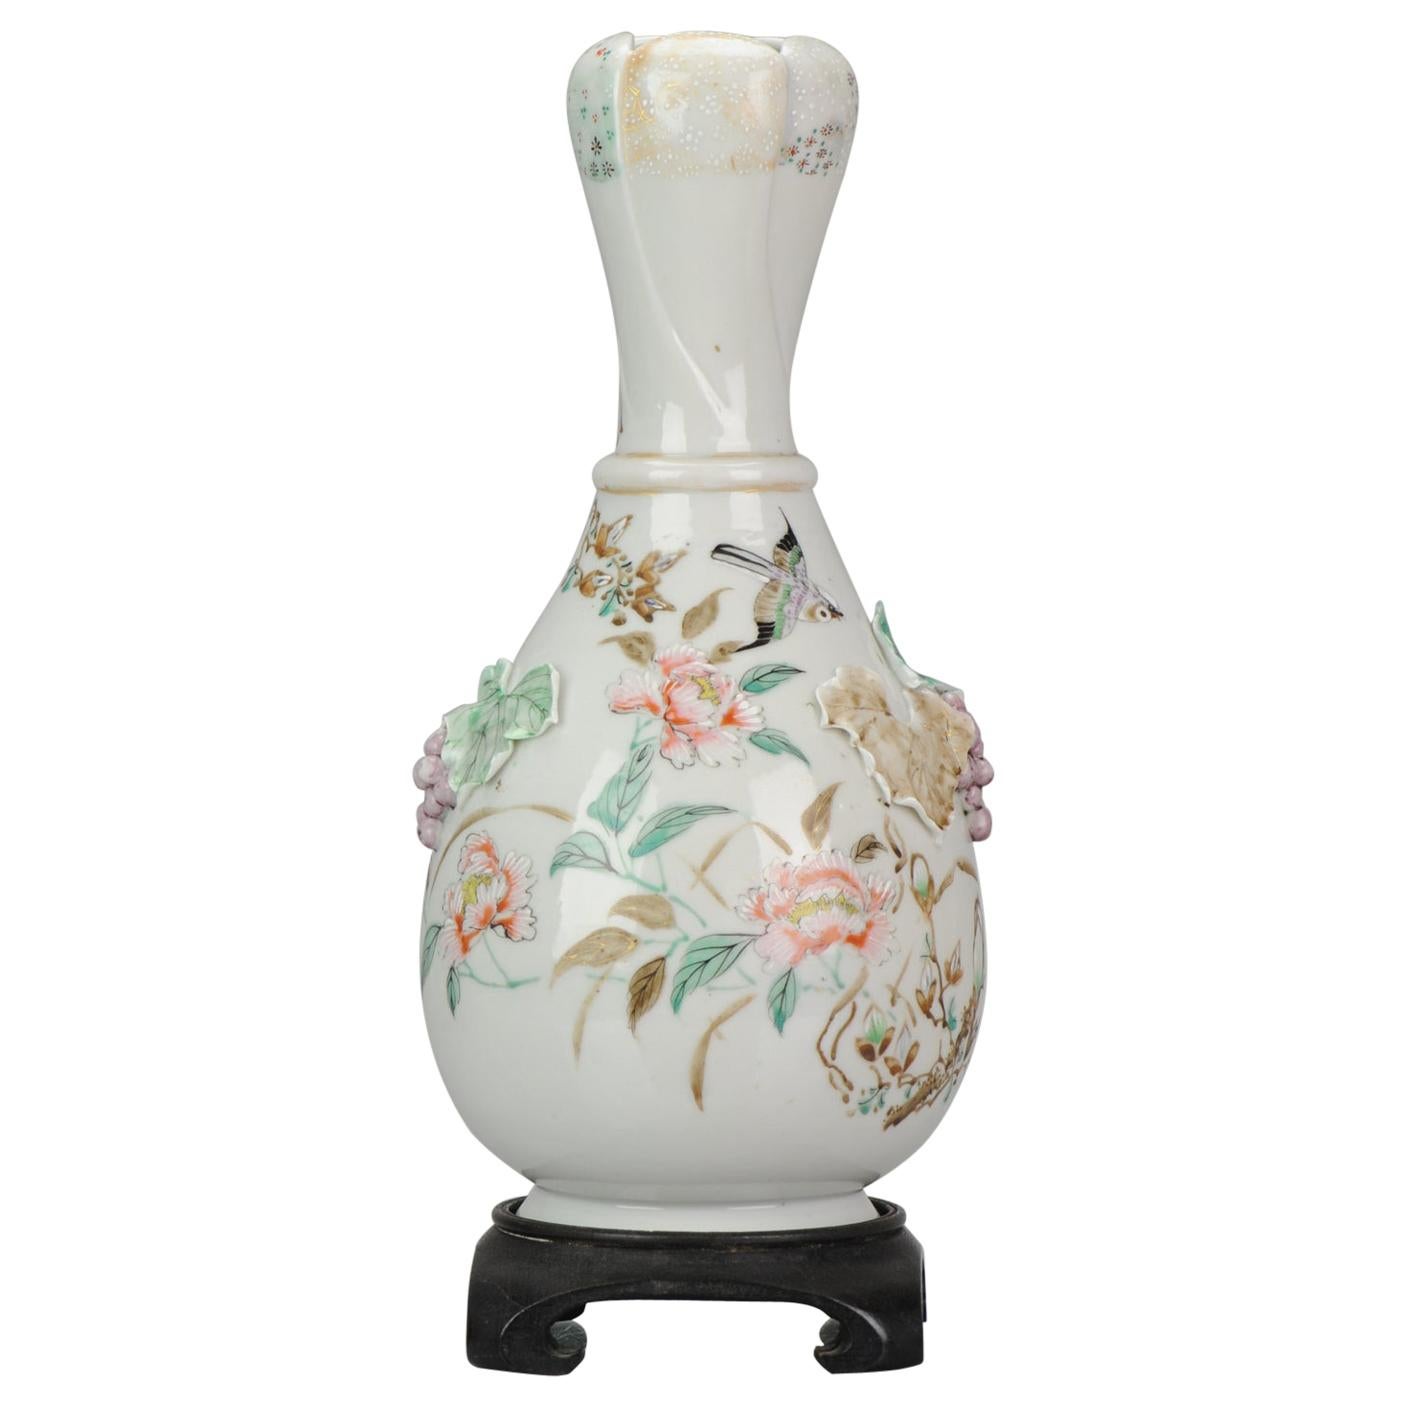 Superbe vase en porcelaine japonaise du 19ème siècle en relief, avec raisins, feuilles, fleurs et oiseaux